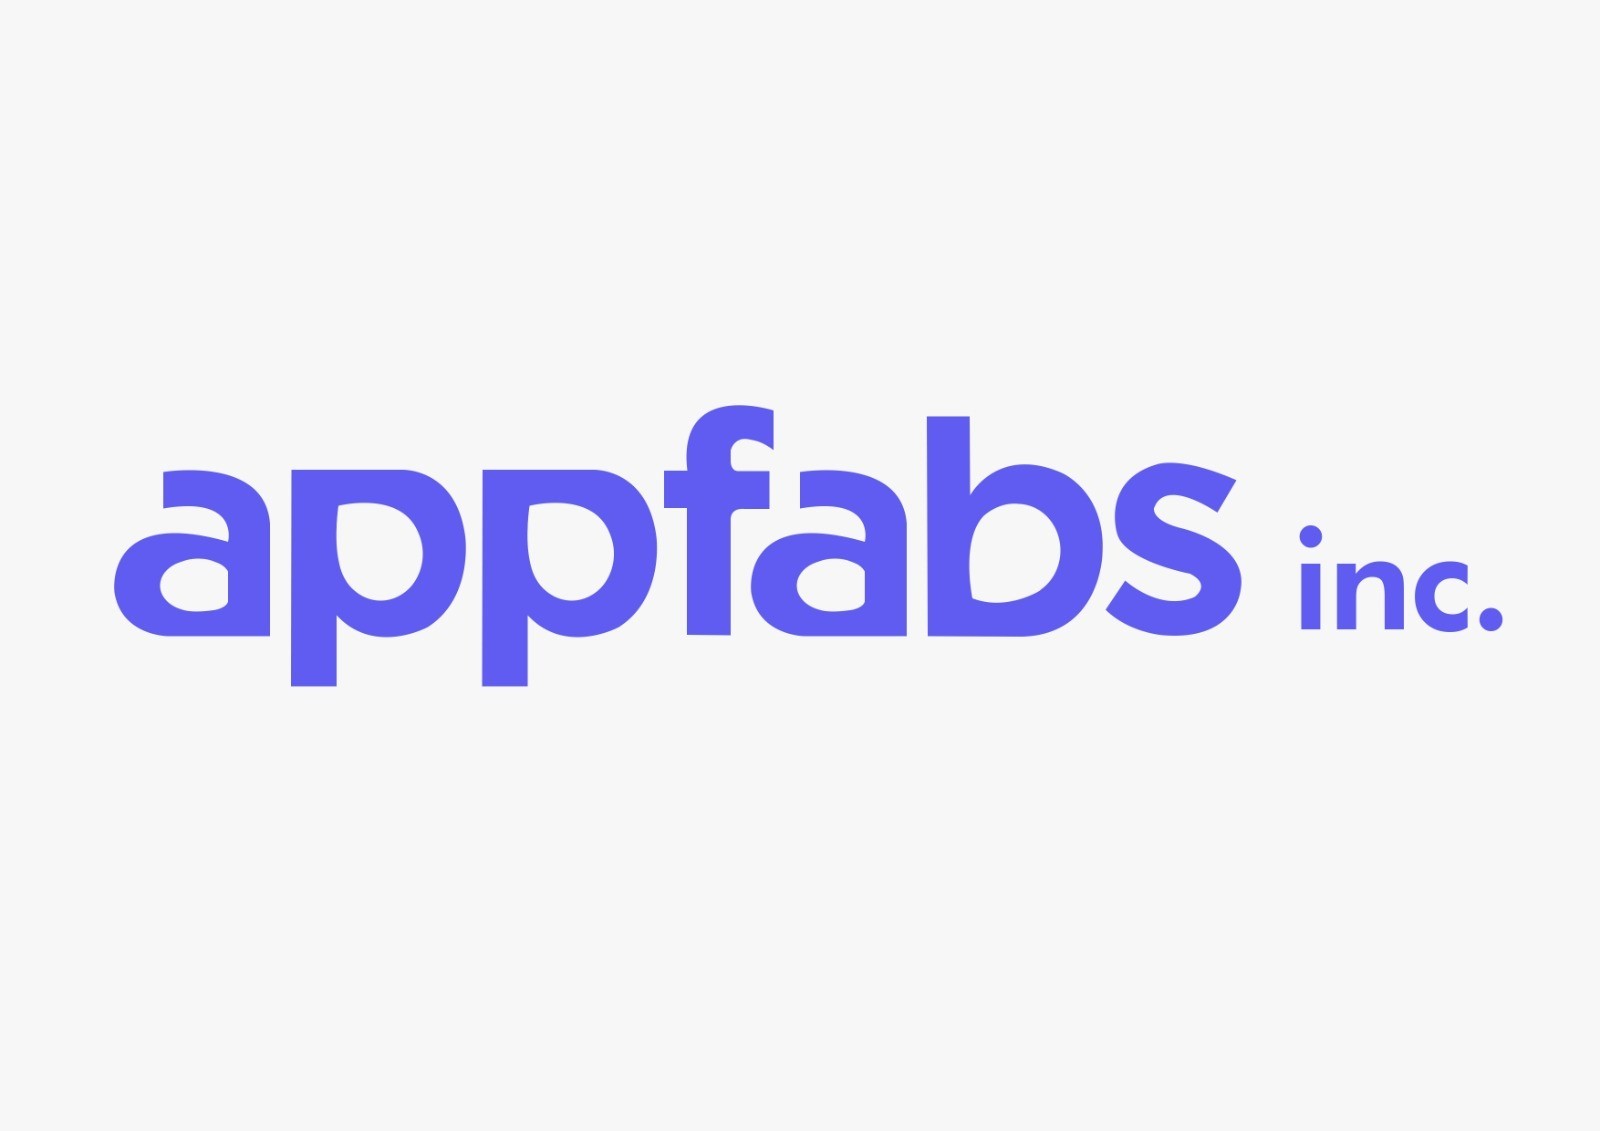 Appfabs Innovation Pvt Ltd